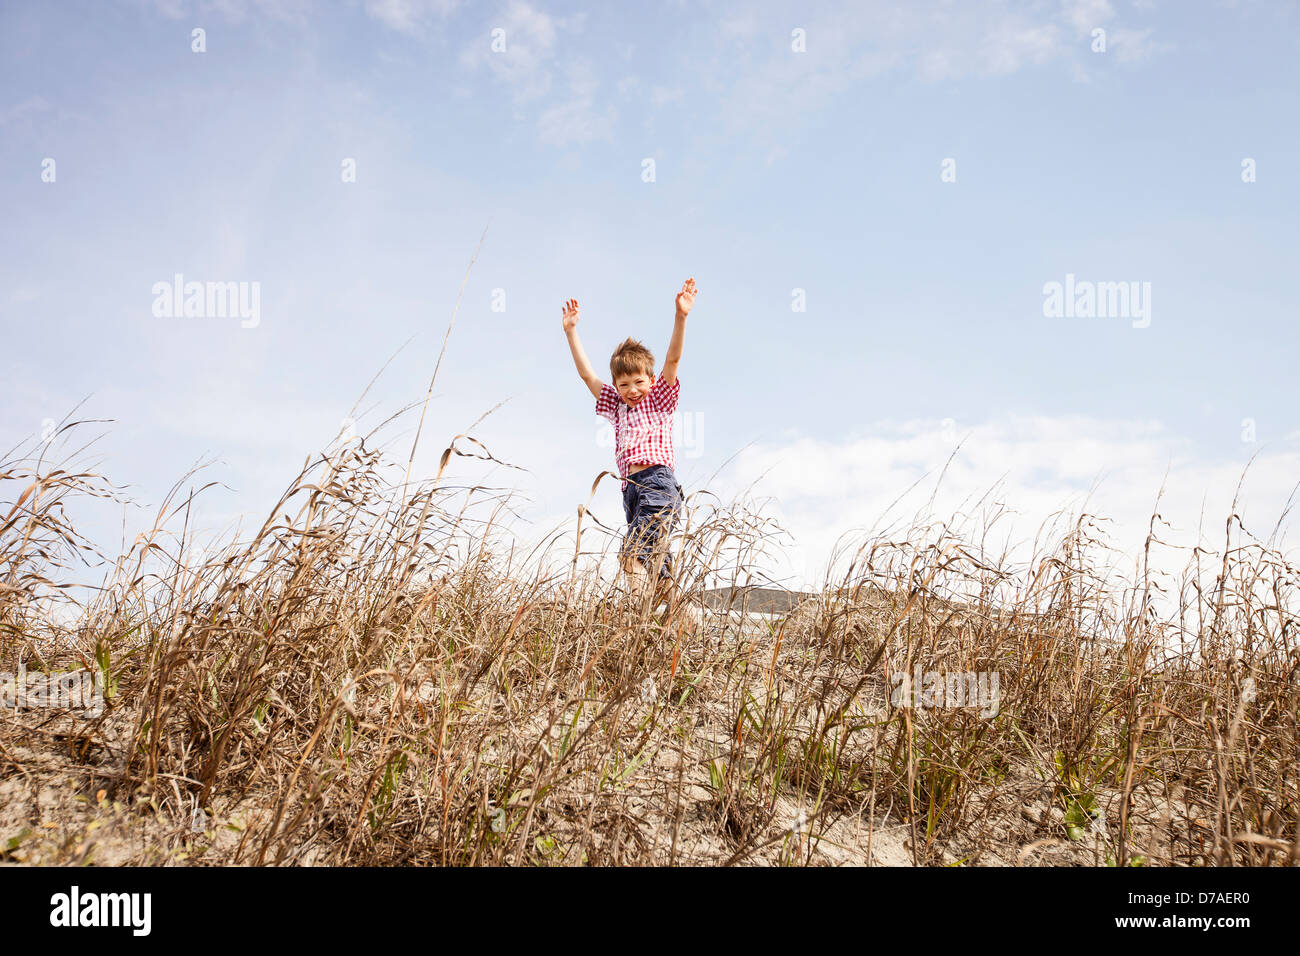 child running through dunes Stock Photo